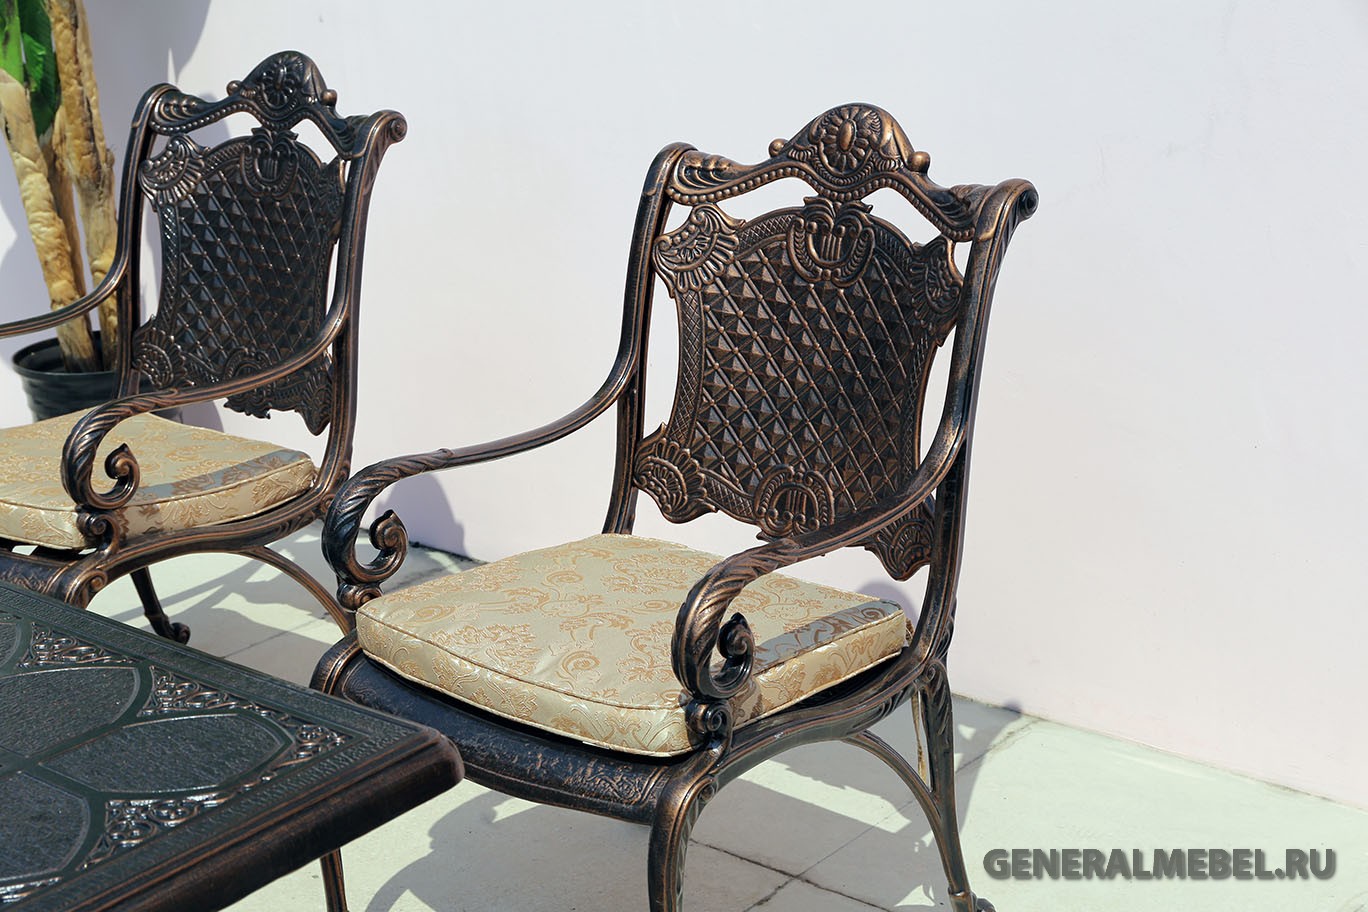 Металлическое кресло Дженерал из литого алюминия, Большое кресло из металла, литая чугунная и алюминиевая мебель, Обеденный комплект литой металлической мебели, столы и кресла для загородного дома, мебель для кафе и ресторанов металлическая